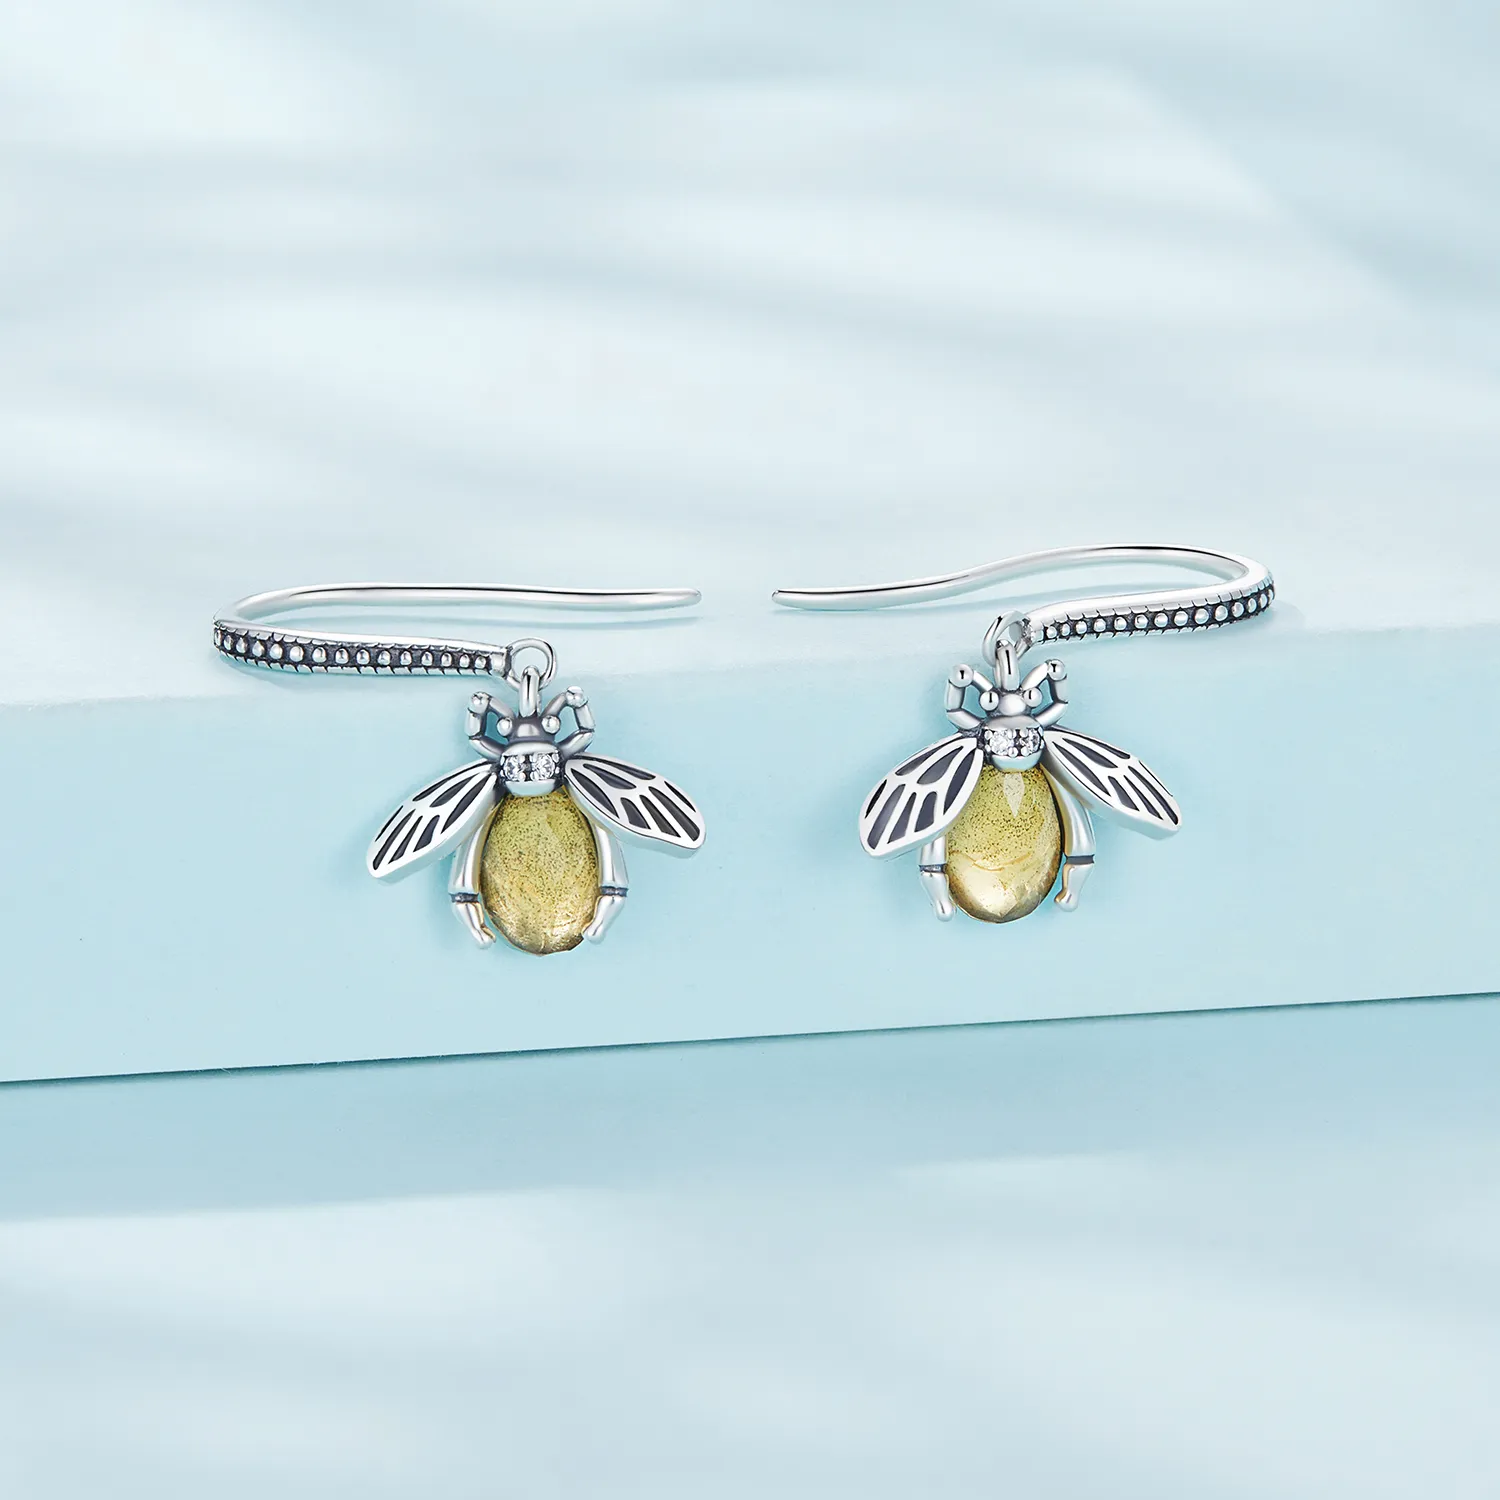 Pandora Style Bee Dangle Earrings - SCE1570